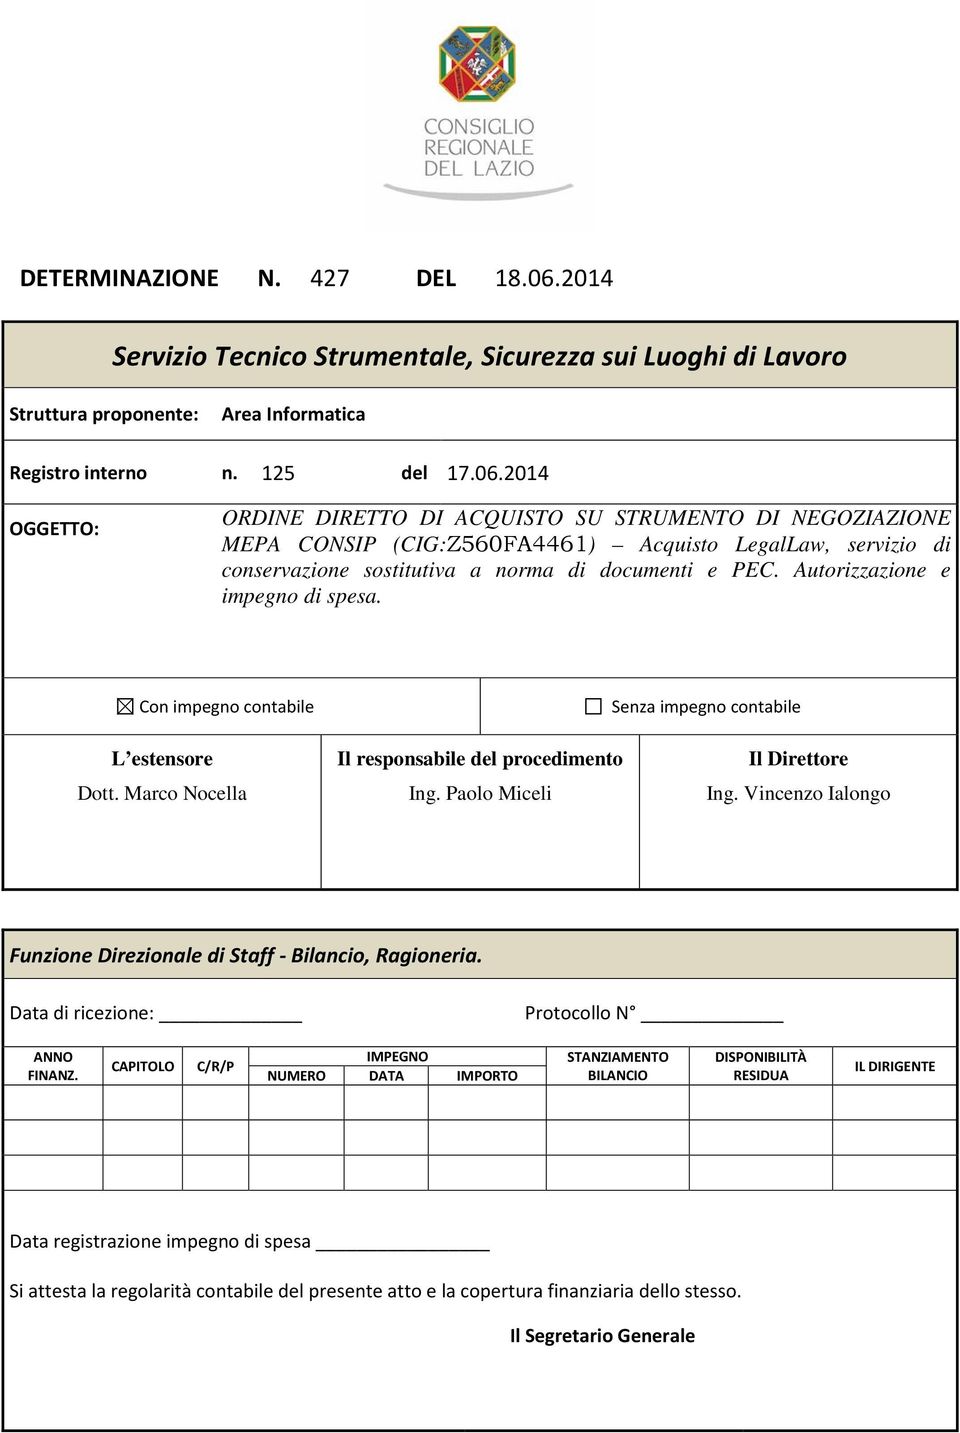 2014 OGGETTO: ORDINE DIRETTO DI ACQUISTO SU STRUMENTO DI NEGOZIAZIONE MEPA CONSIP (CIG:Z560FA4461) Acquisto LegalLaw, servizio di conservazione sostitutiva a norma di documenti e PEC.